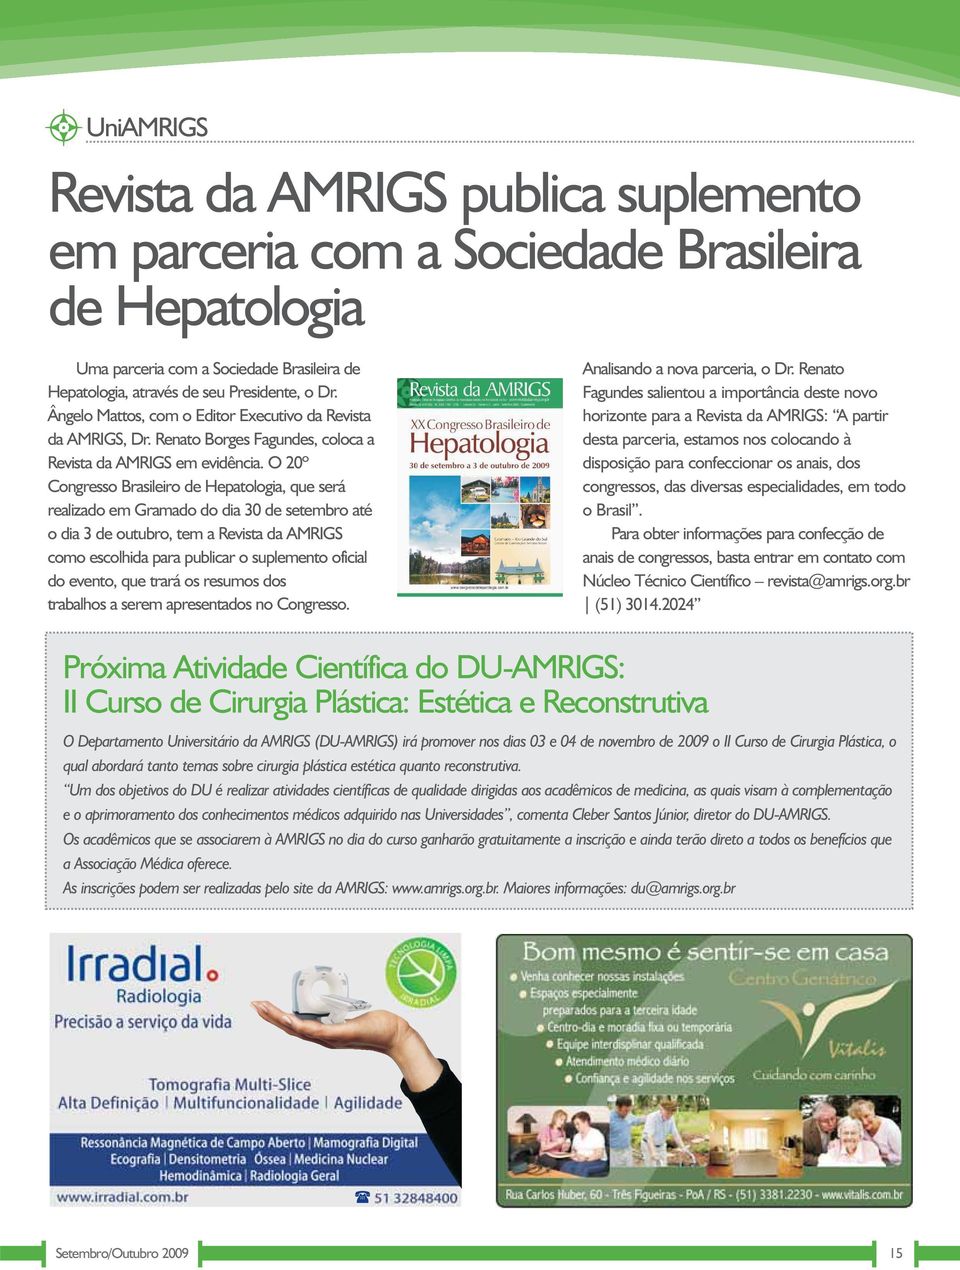 O 20º Congresso Brasileiro de Hepatologia, que será realizado em Gramado do dia 30 de setembro até o dia 3 de outubro, tem a Revista da AMRIGS como escolhida para publicar o suplemento oficial do